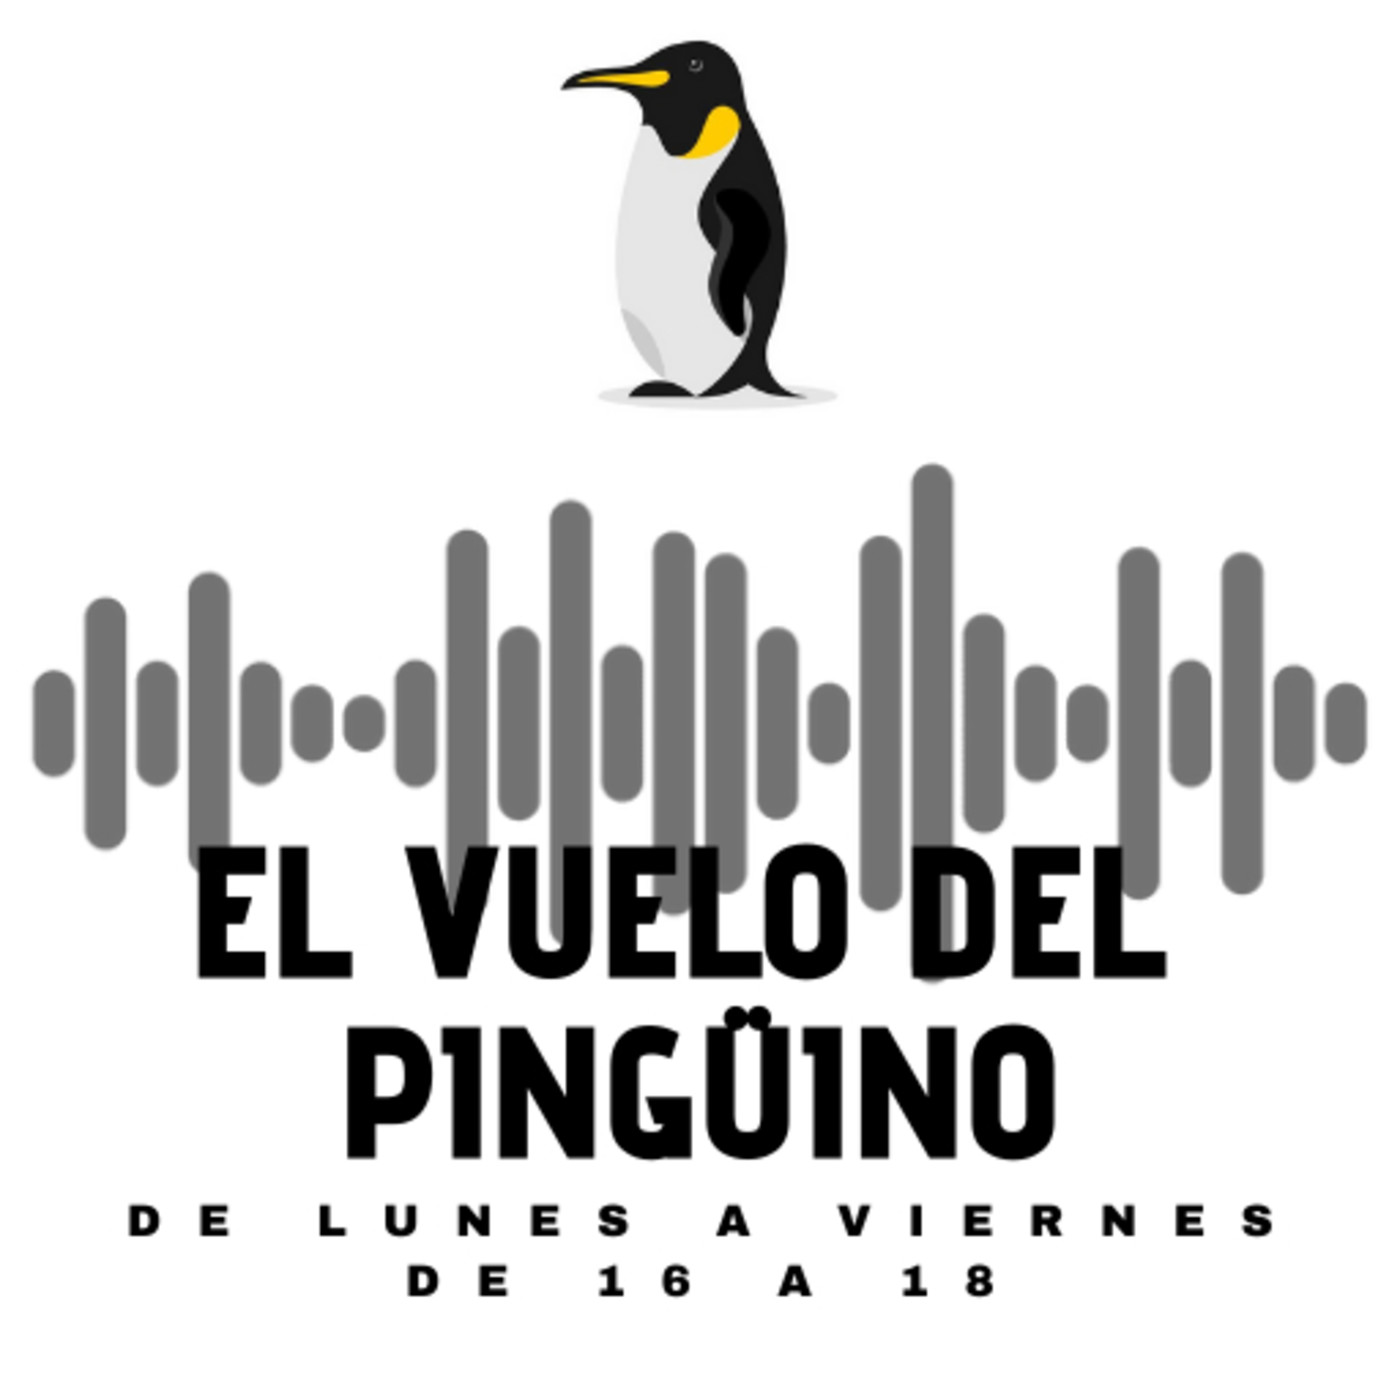 El vuelo del Pingüino - Martes - Actualidad, humor, cultura y música - 09-02-2021